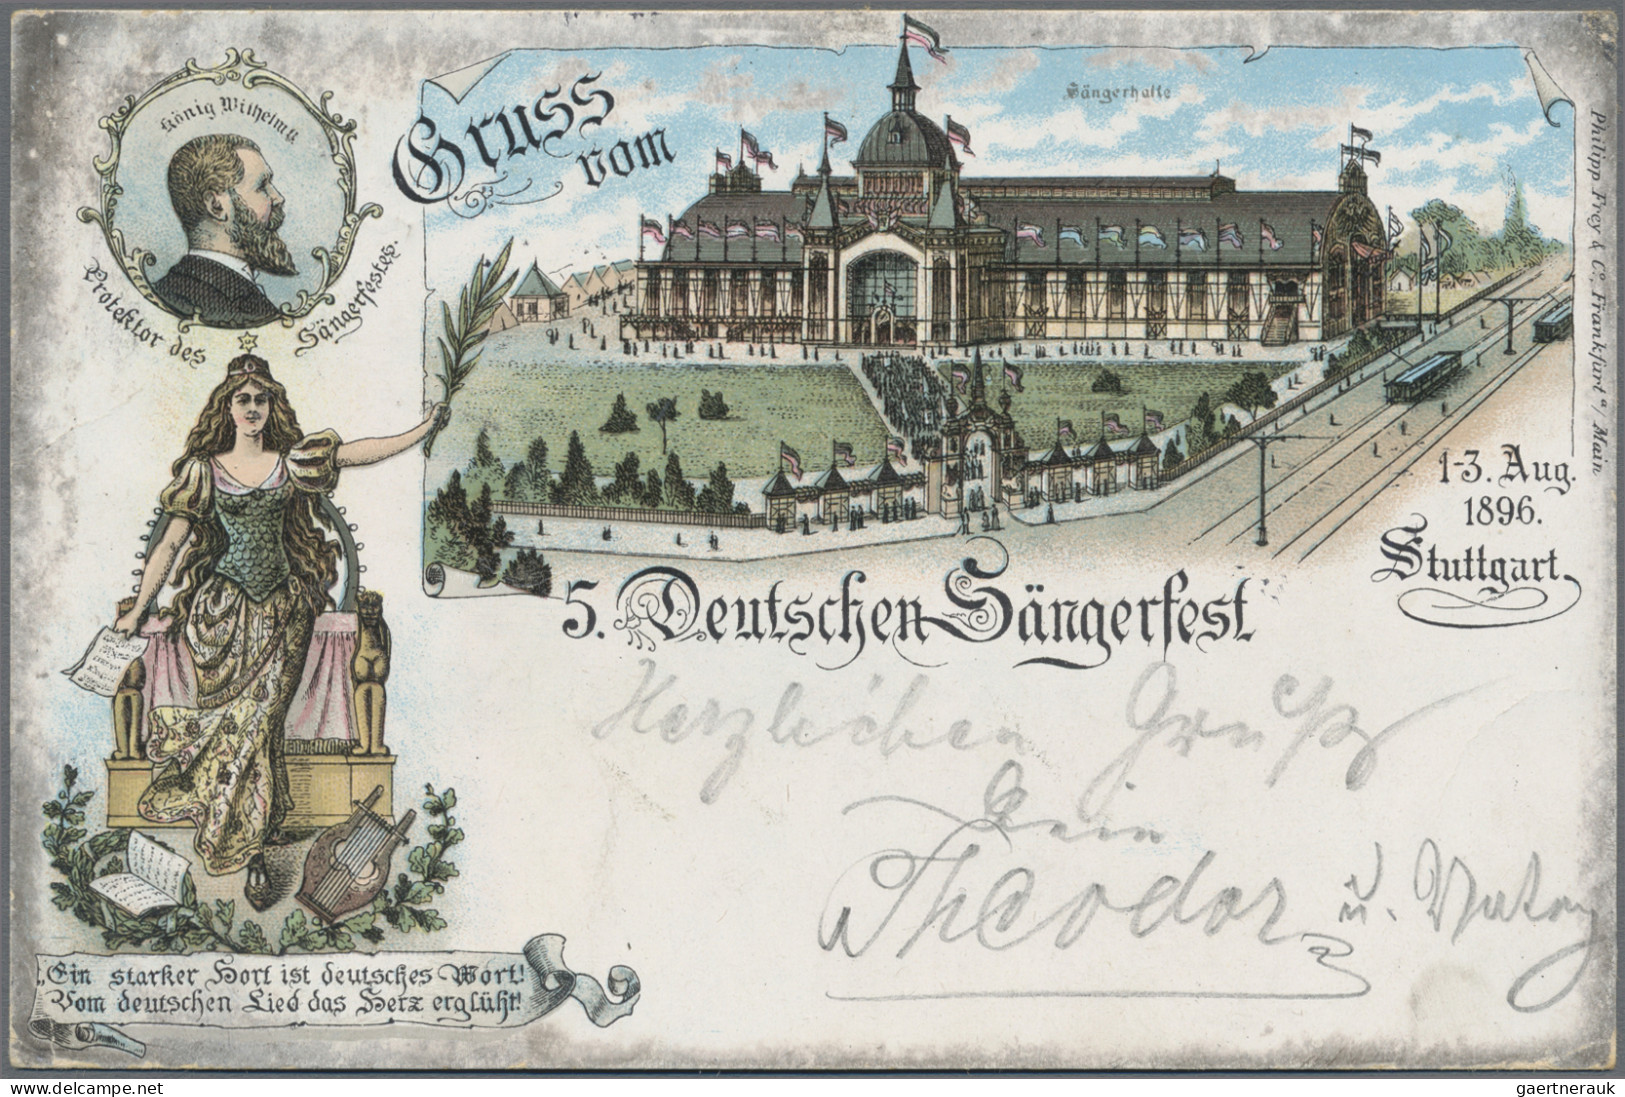 Ansichtskarten: Baden-Württemberg: 1896/1950 (ca.), vielseitige Partie von ca. 2